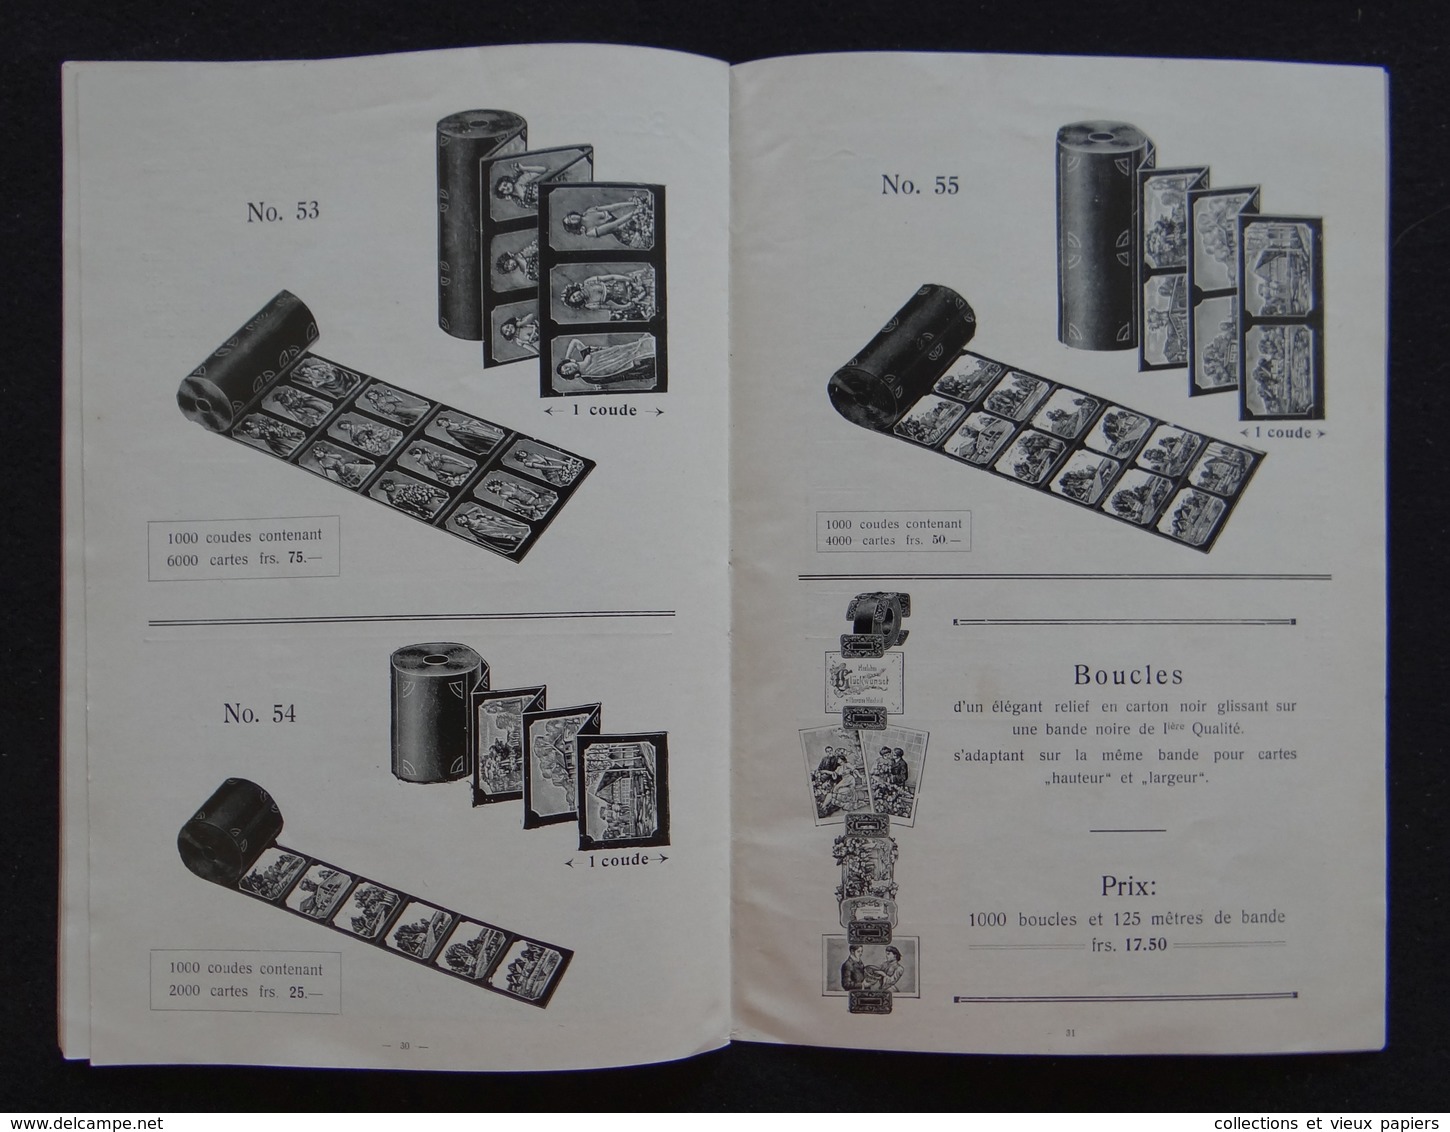 Catalogue Emile JAGERT-BERLIN - Fabrique d'albums pour cartes postales - Schuller Schumacher Paris